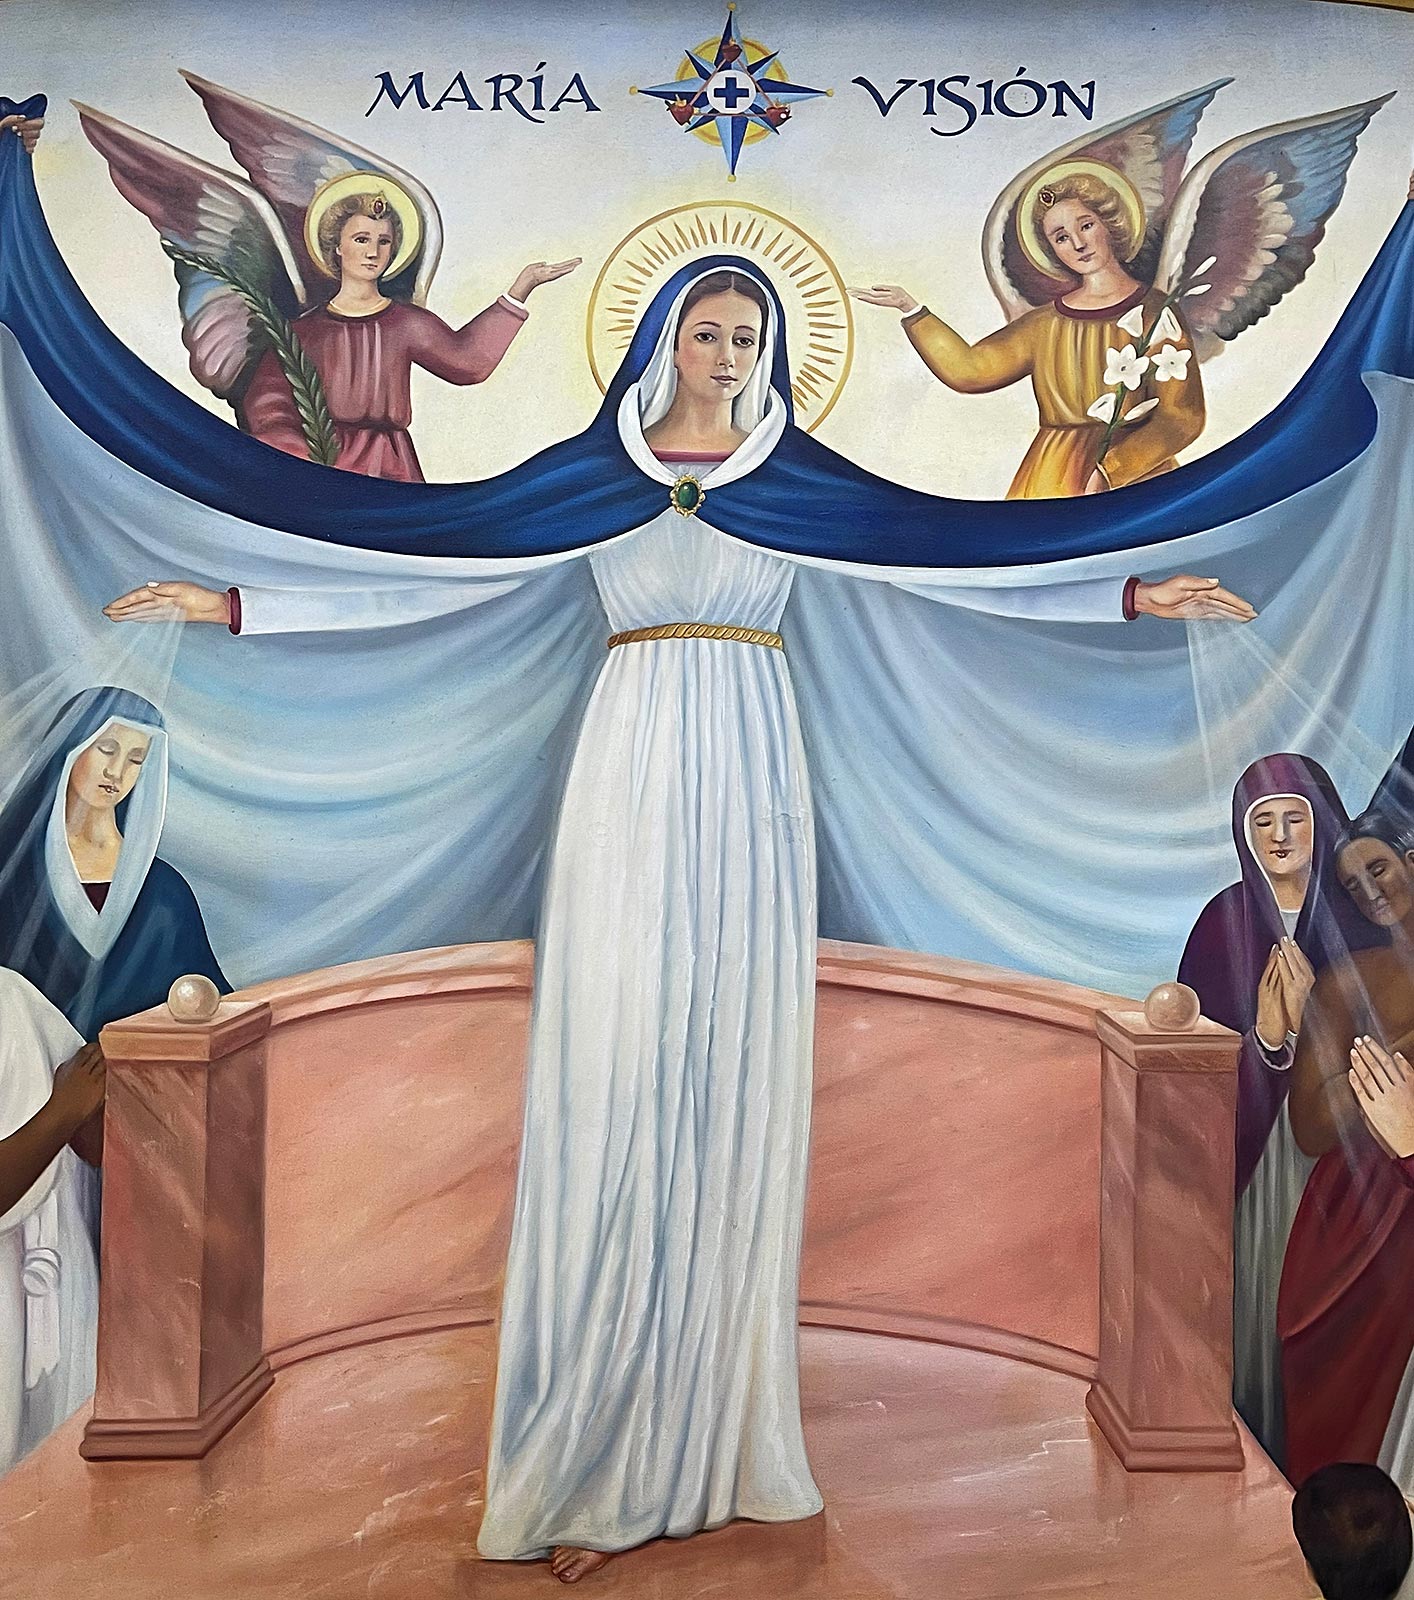 Schilderij van Maria, Marian centrum in de buurt van Basiliek van Onze-Lieve-Vrouw van Zapopan, Guadalajara